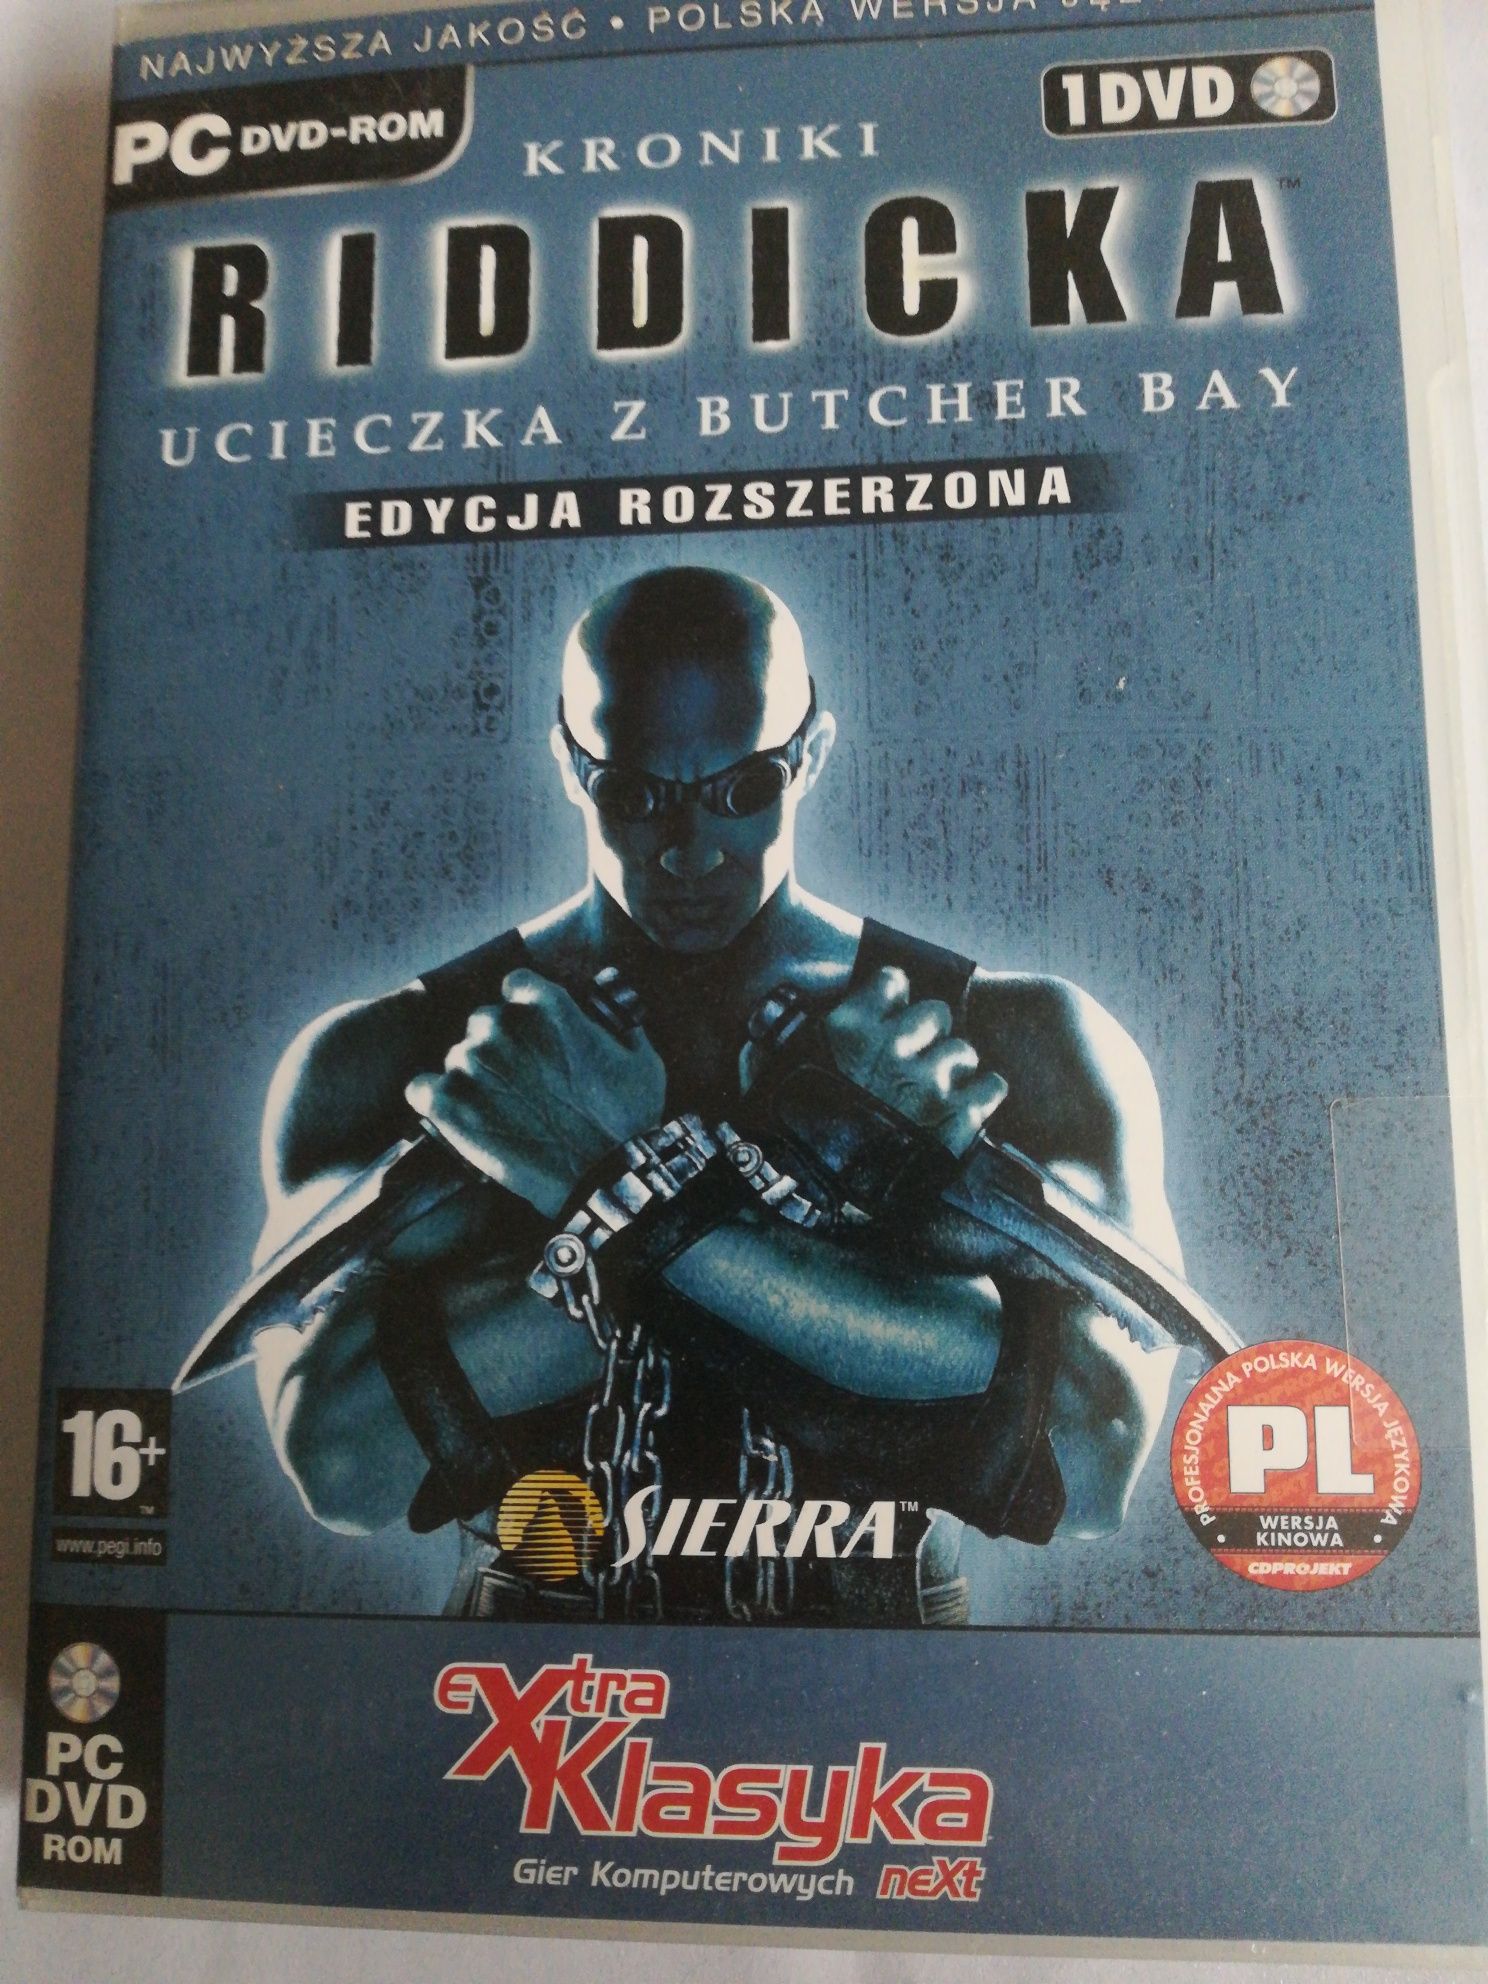 Kroniki Riddicka -edycja rozszerzona